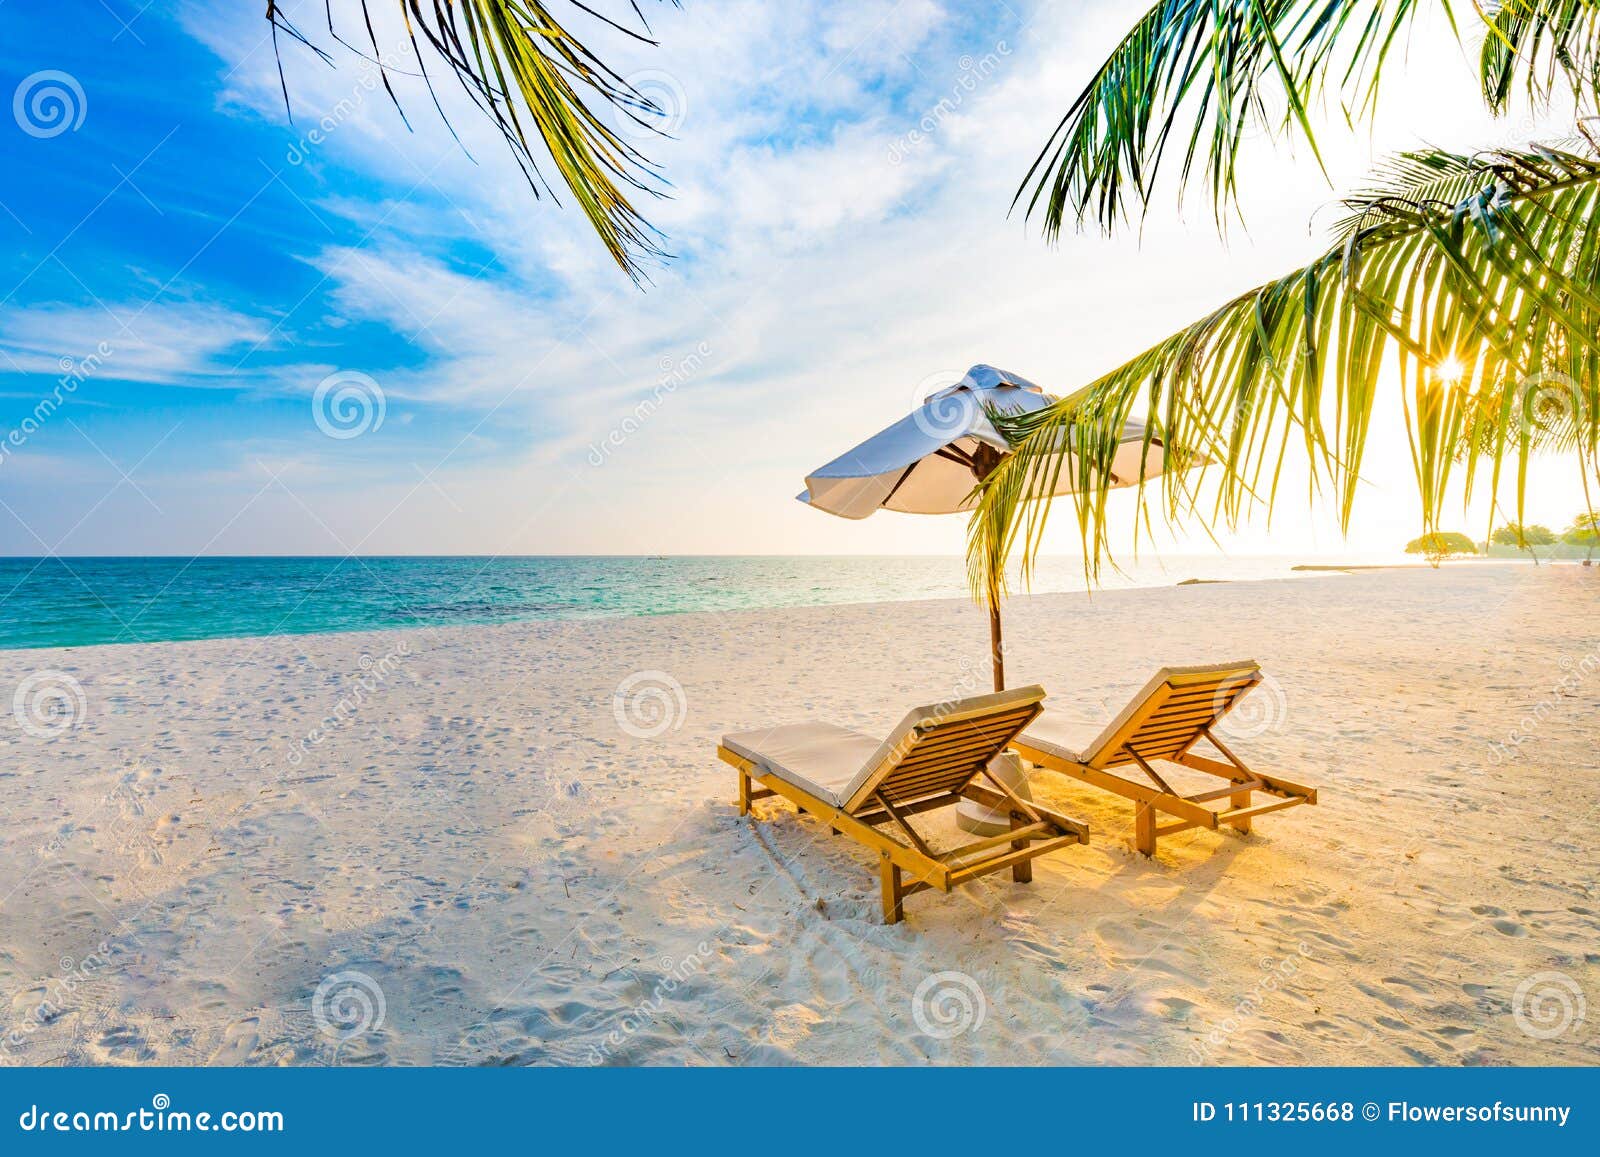 夏天旅行目的地背景夏天海滩场面 太阳床阳伞和棕榈树库存照片 图片包括有夏威夷 多米尼加共和国